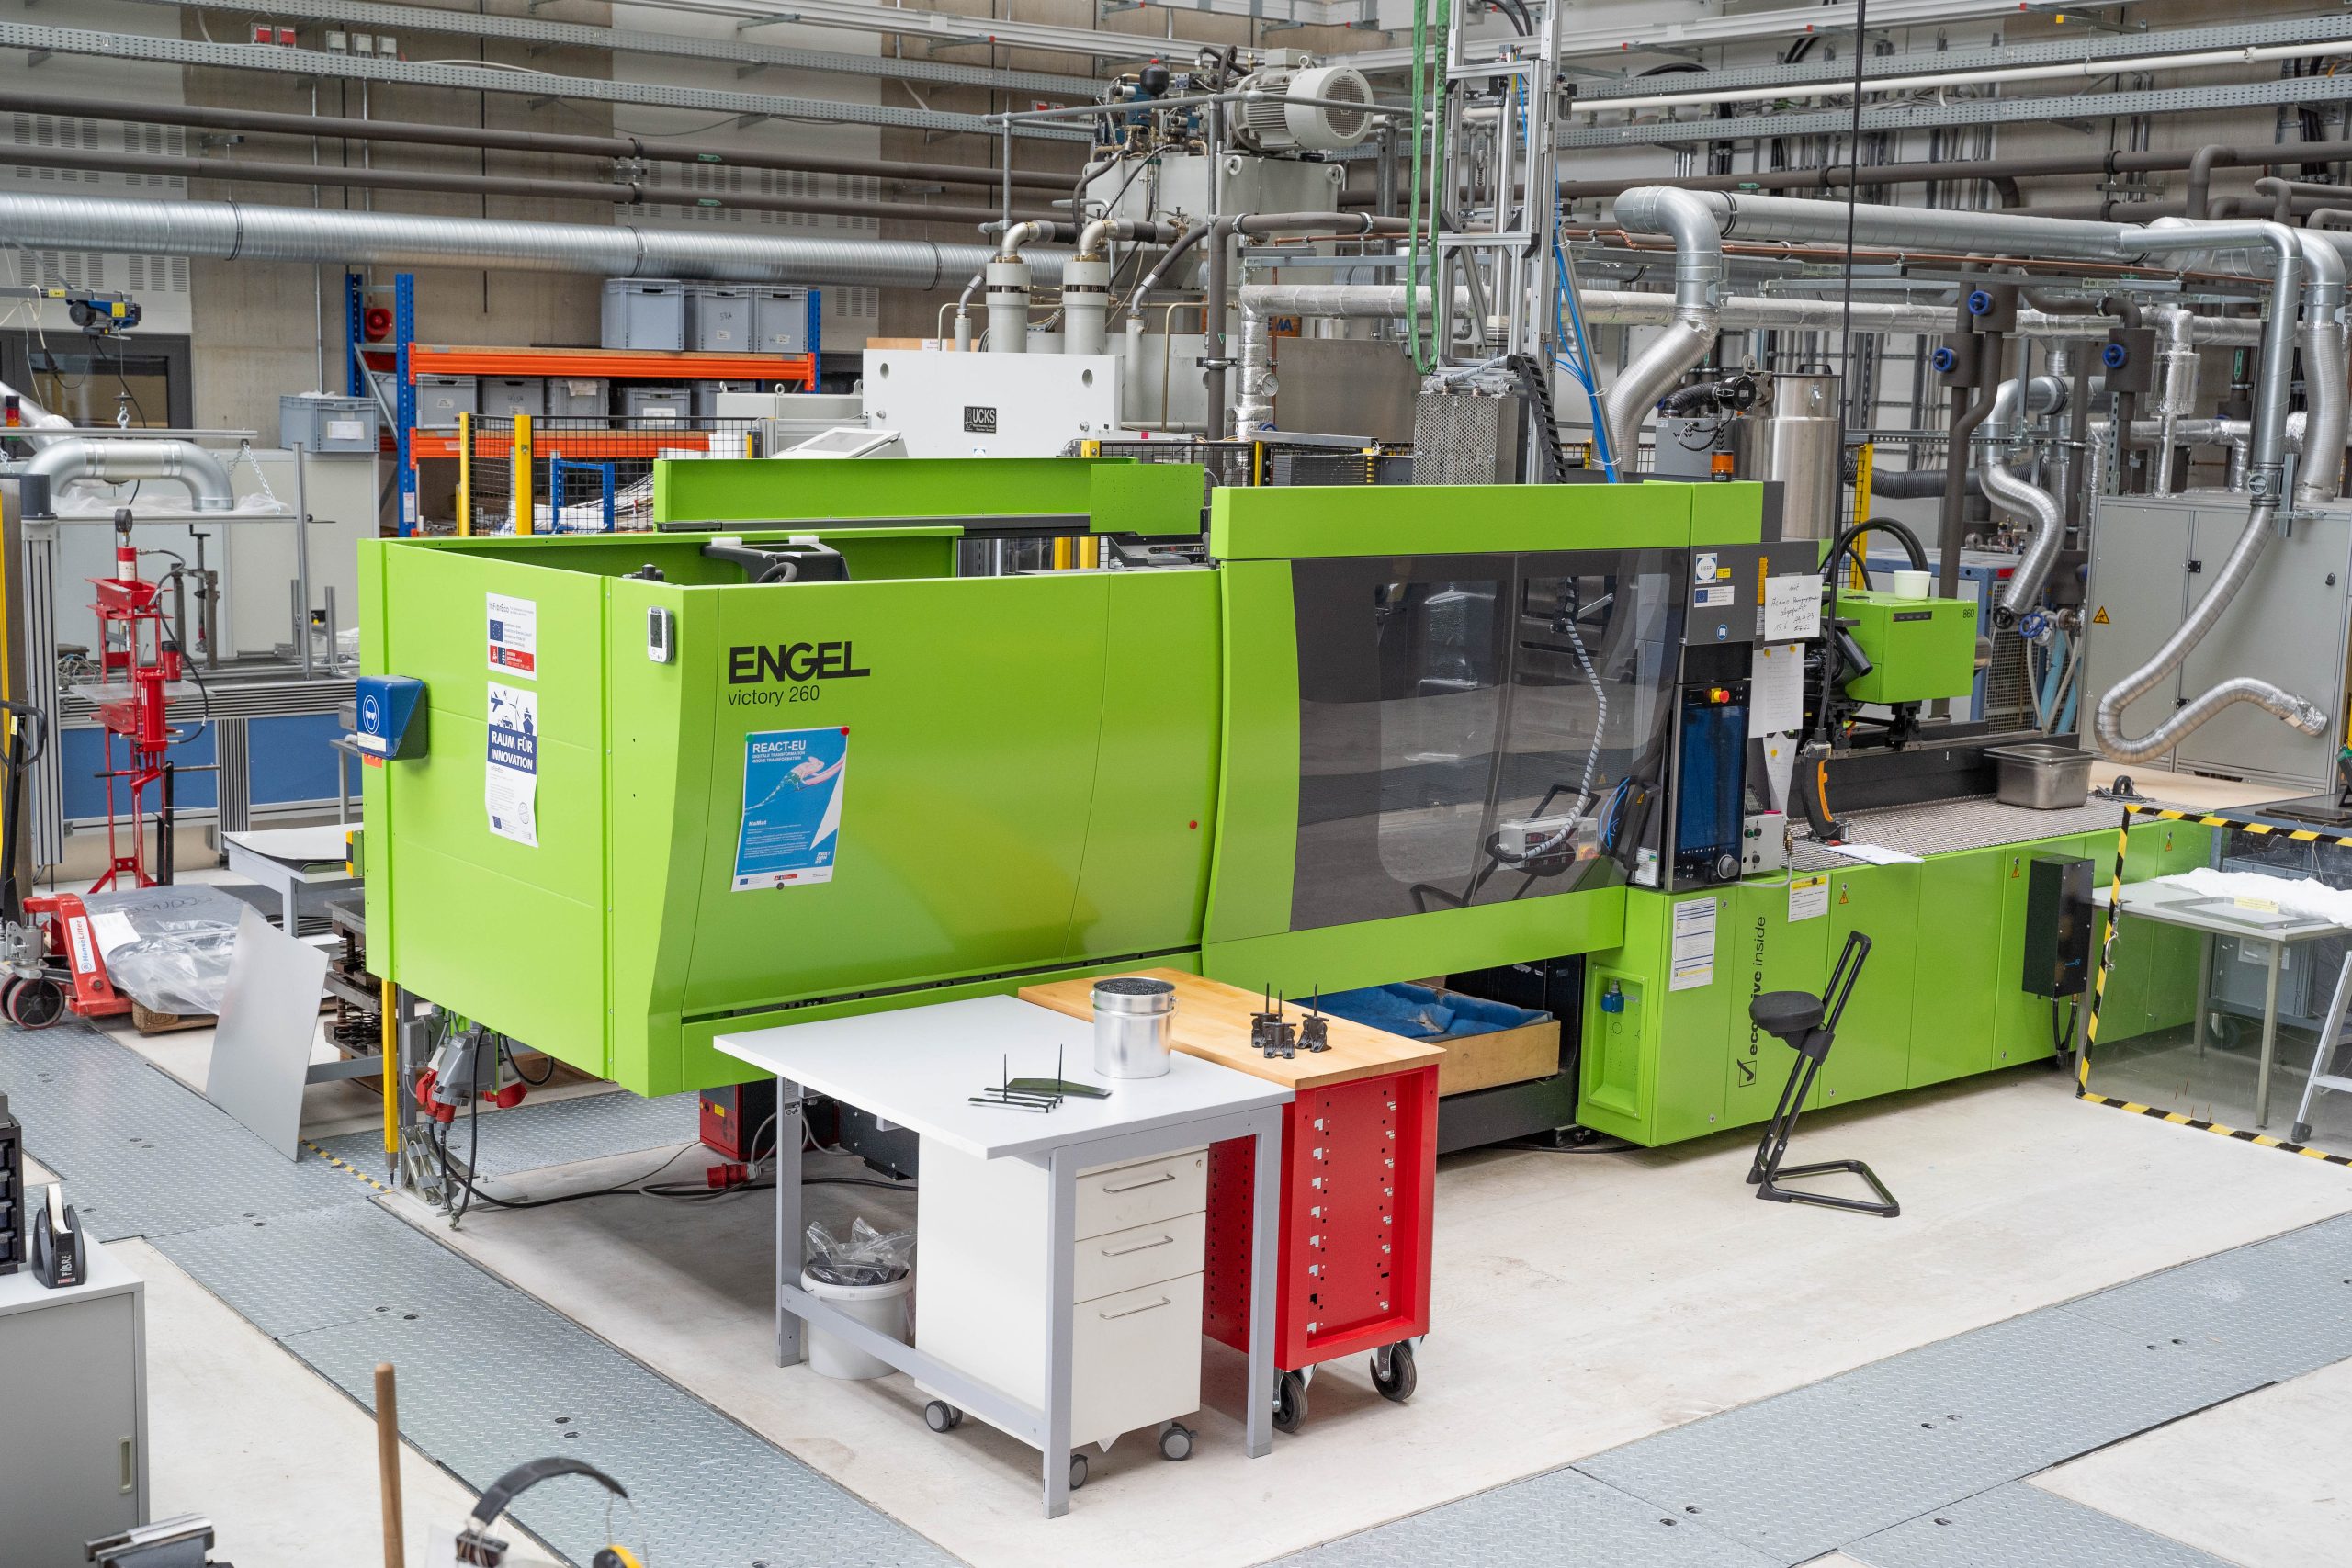 Eine grüne Maschine steht in einer Werkstatthalle